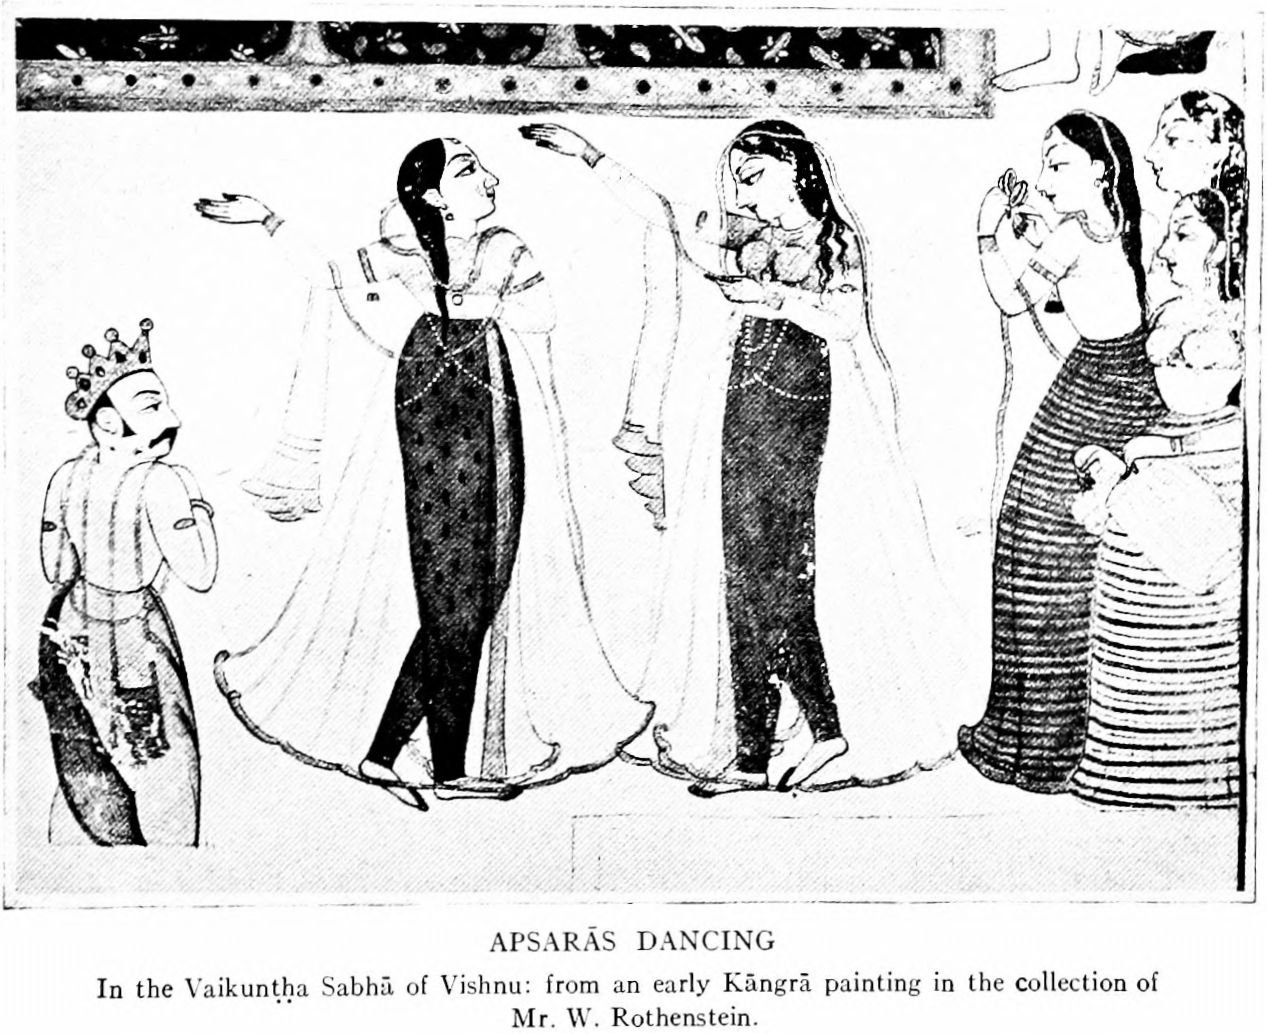 apsaras dancing